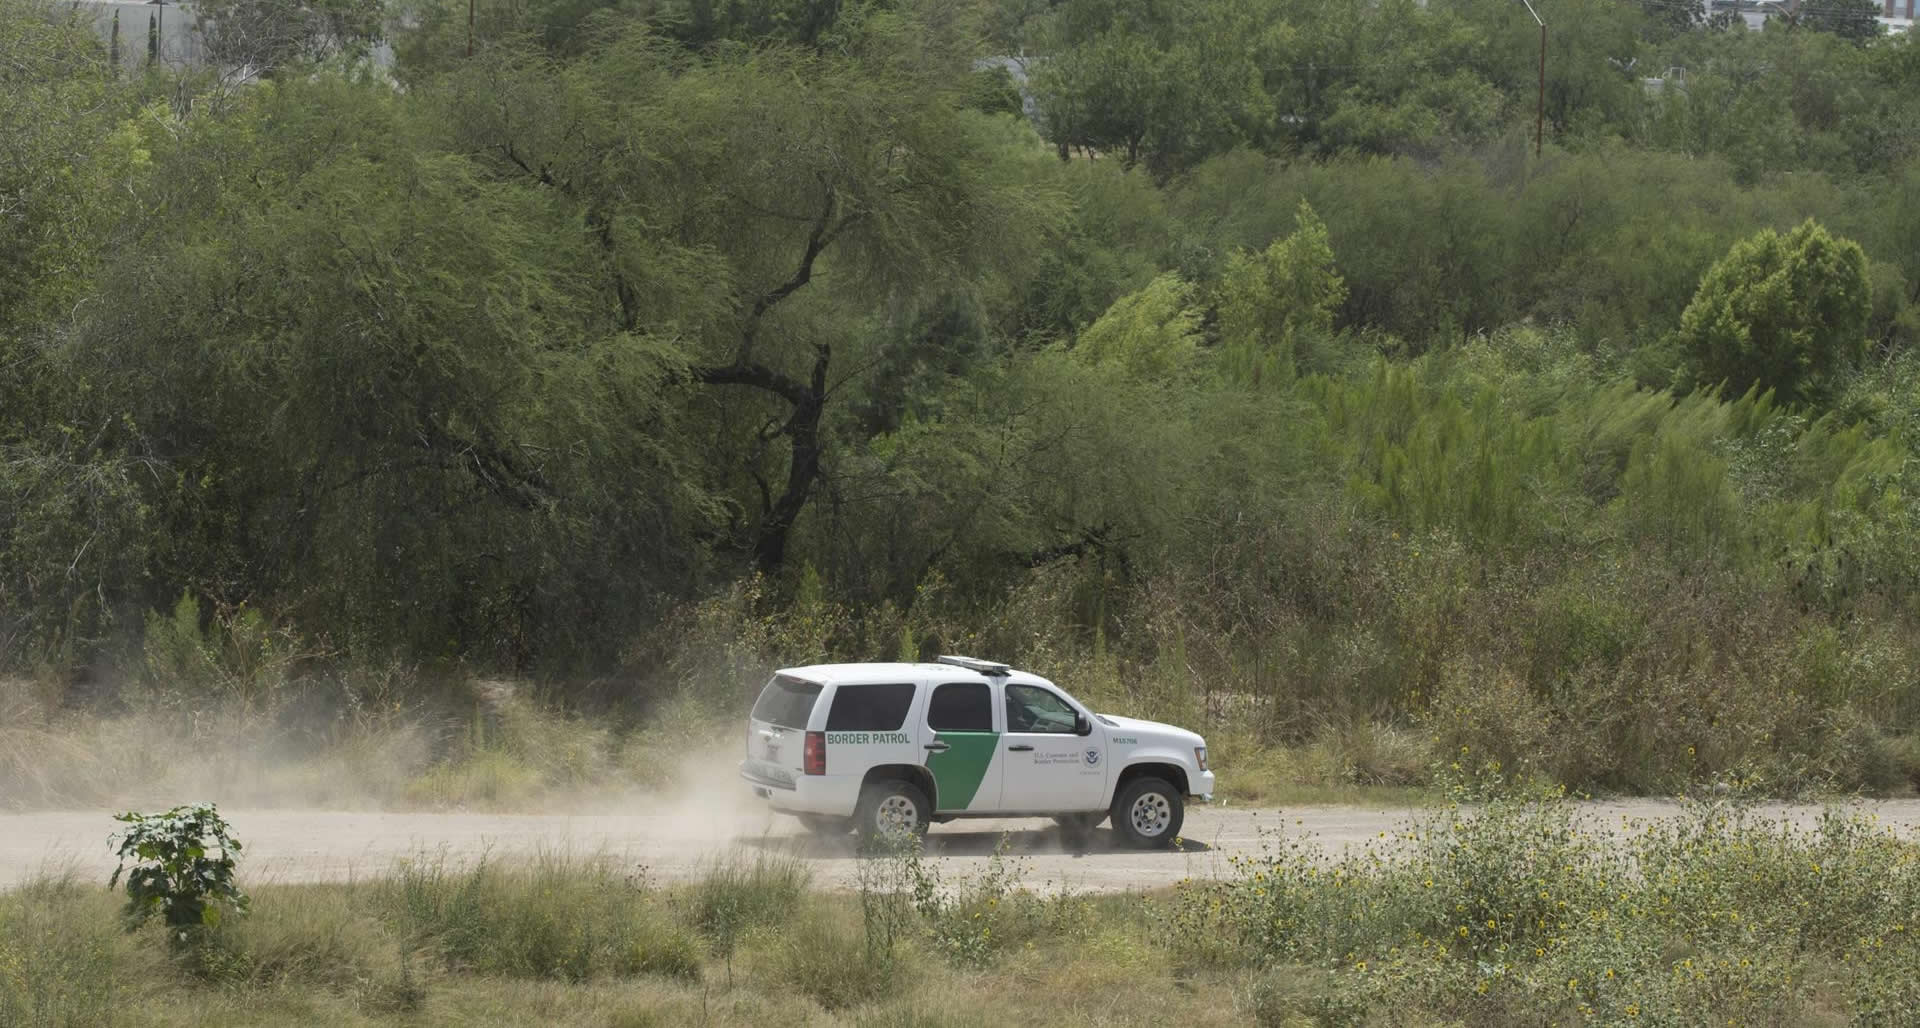 Arizona busca dejar a rancheros disparar a migrantes que crucen sus tierras en la frontera